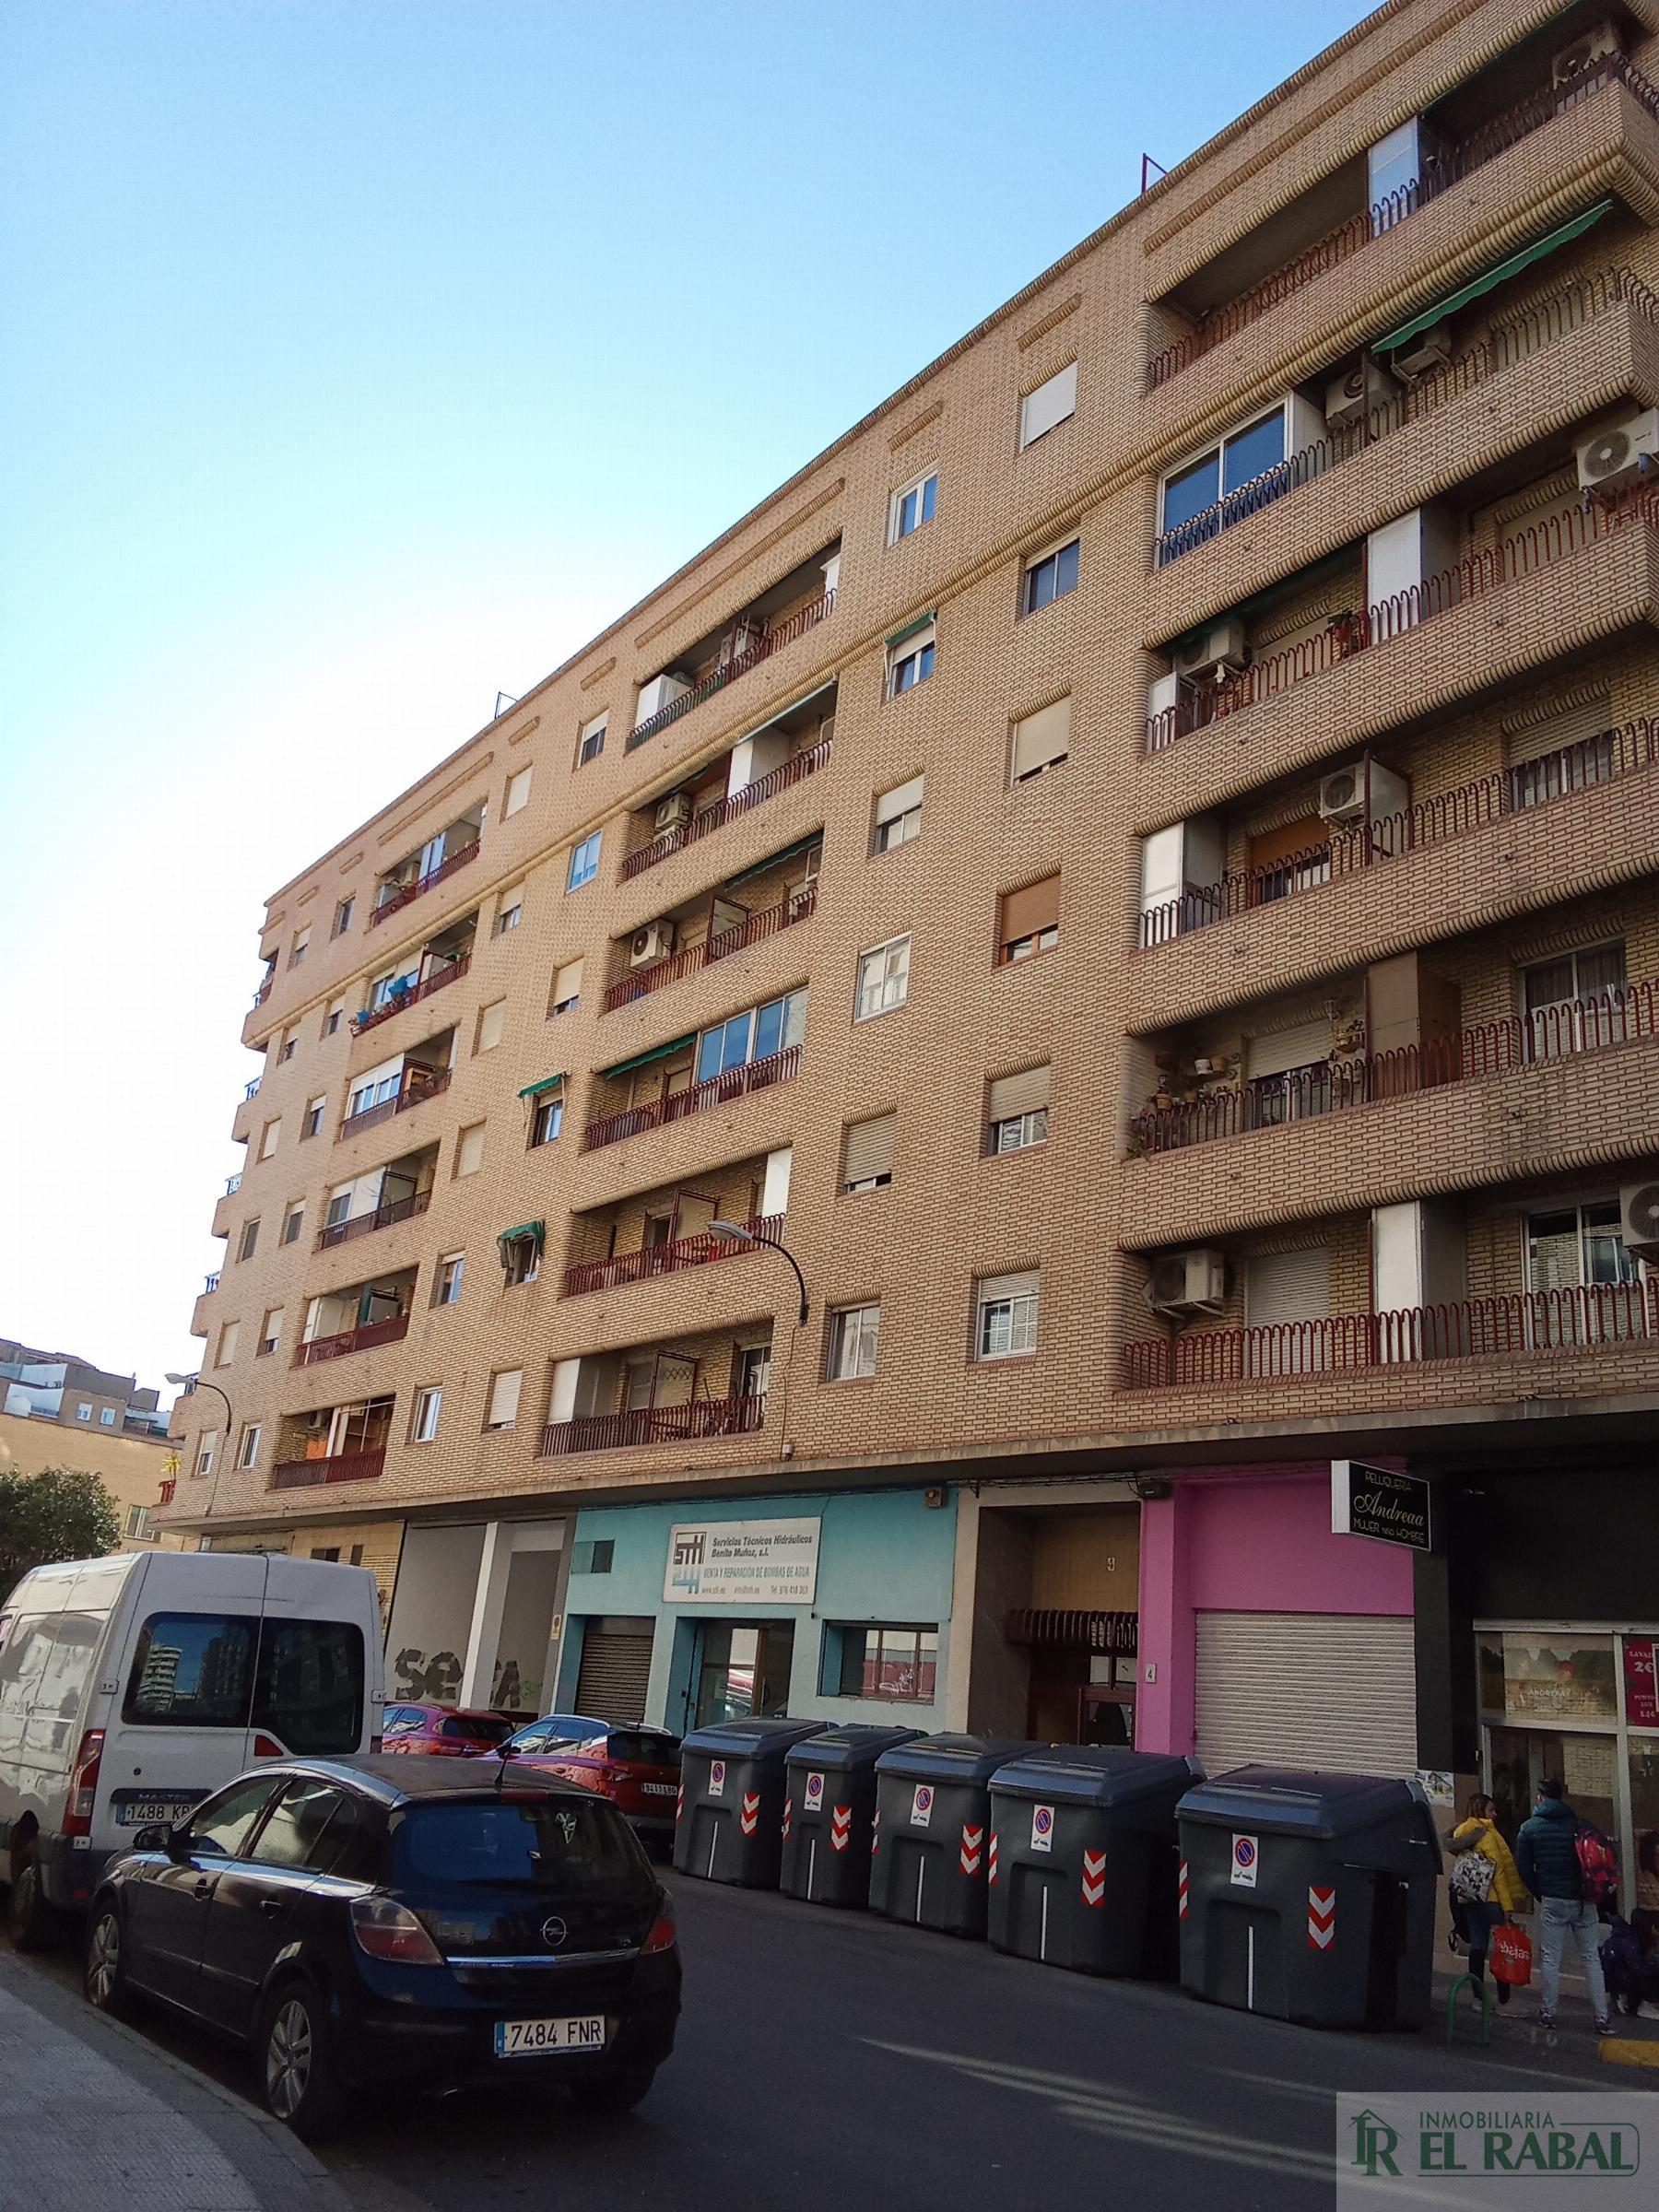 For sale of flat in Zaragoza